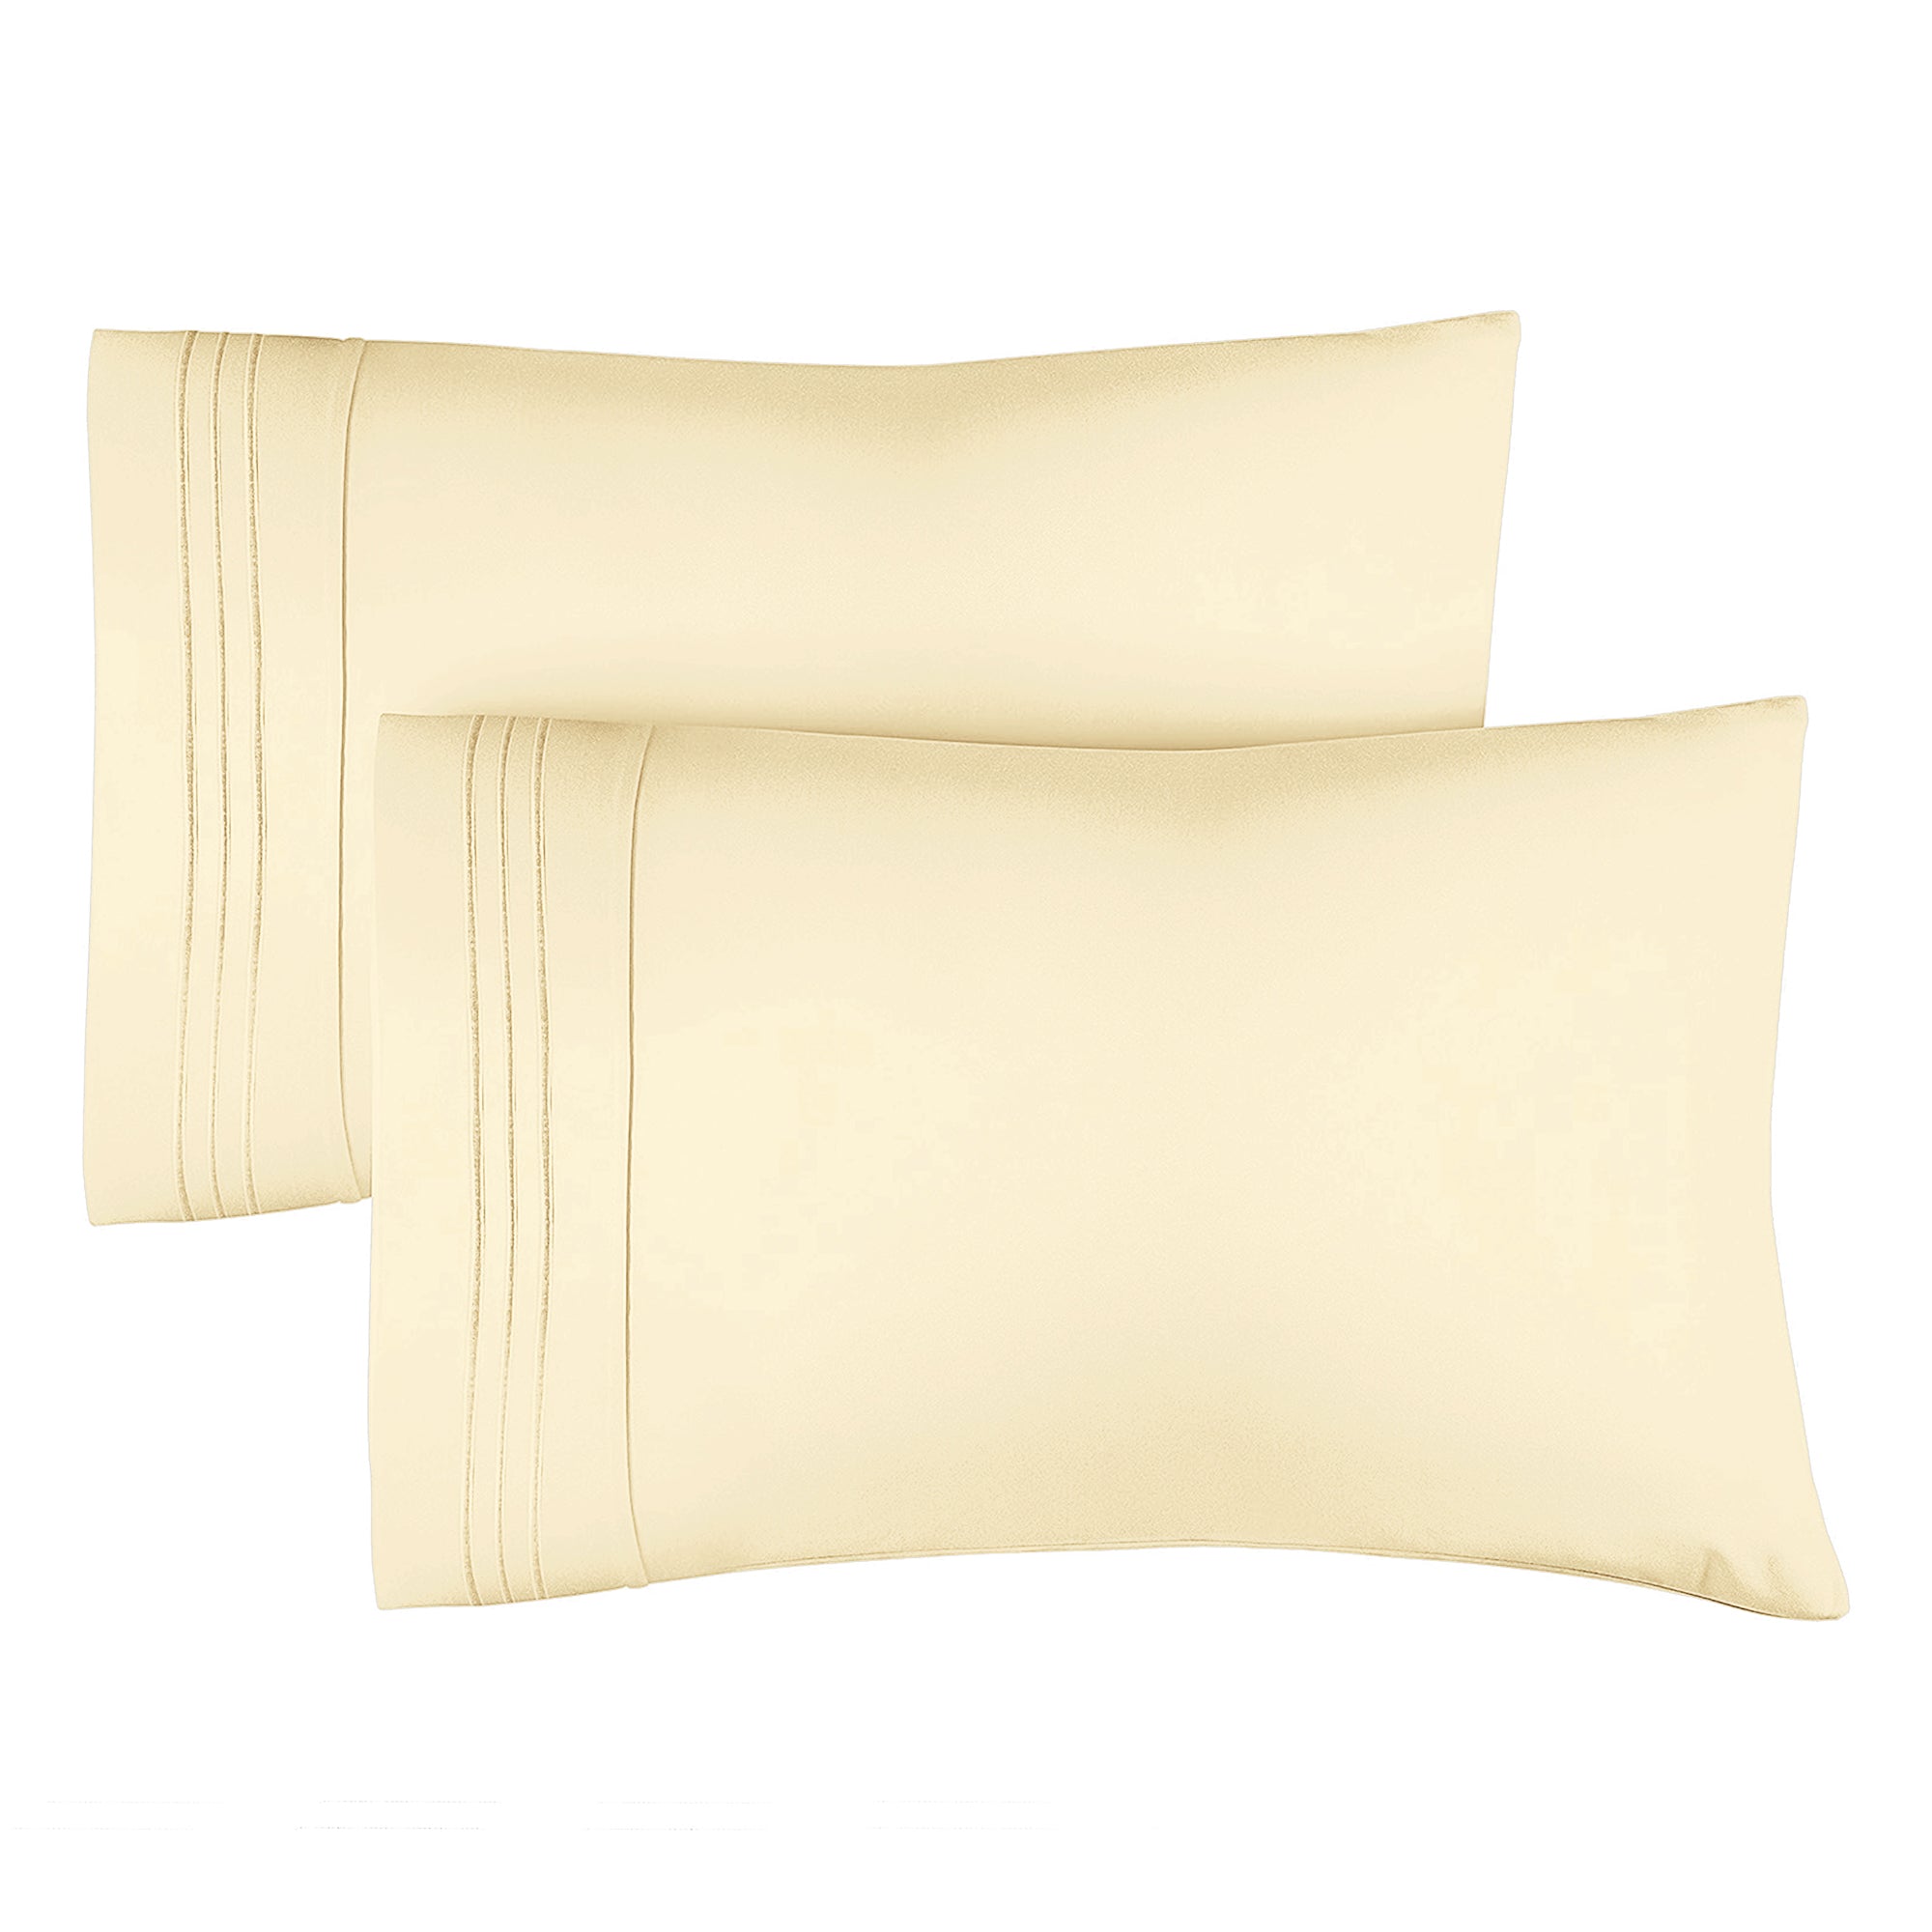 2 Pillowcase Set - Off White